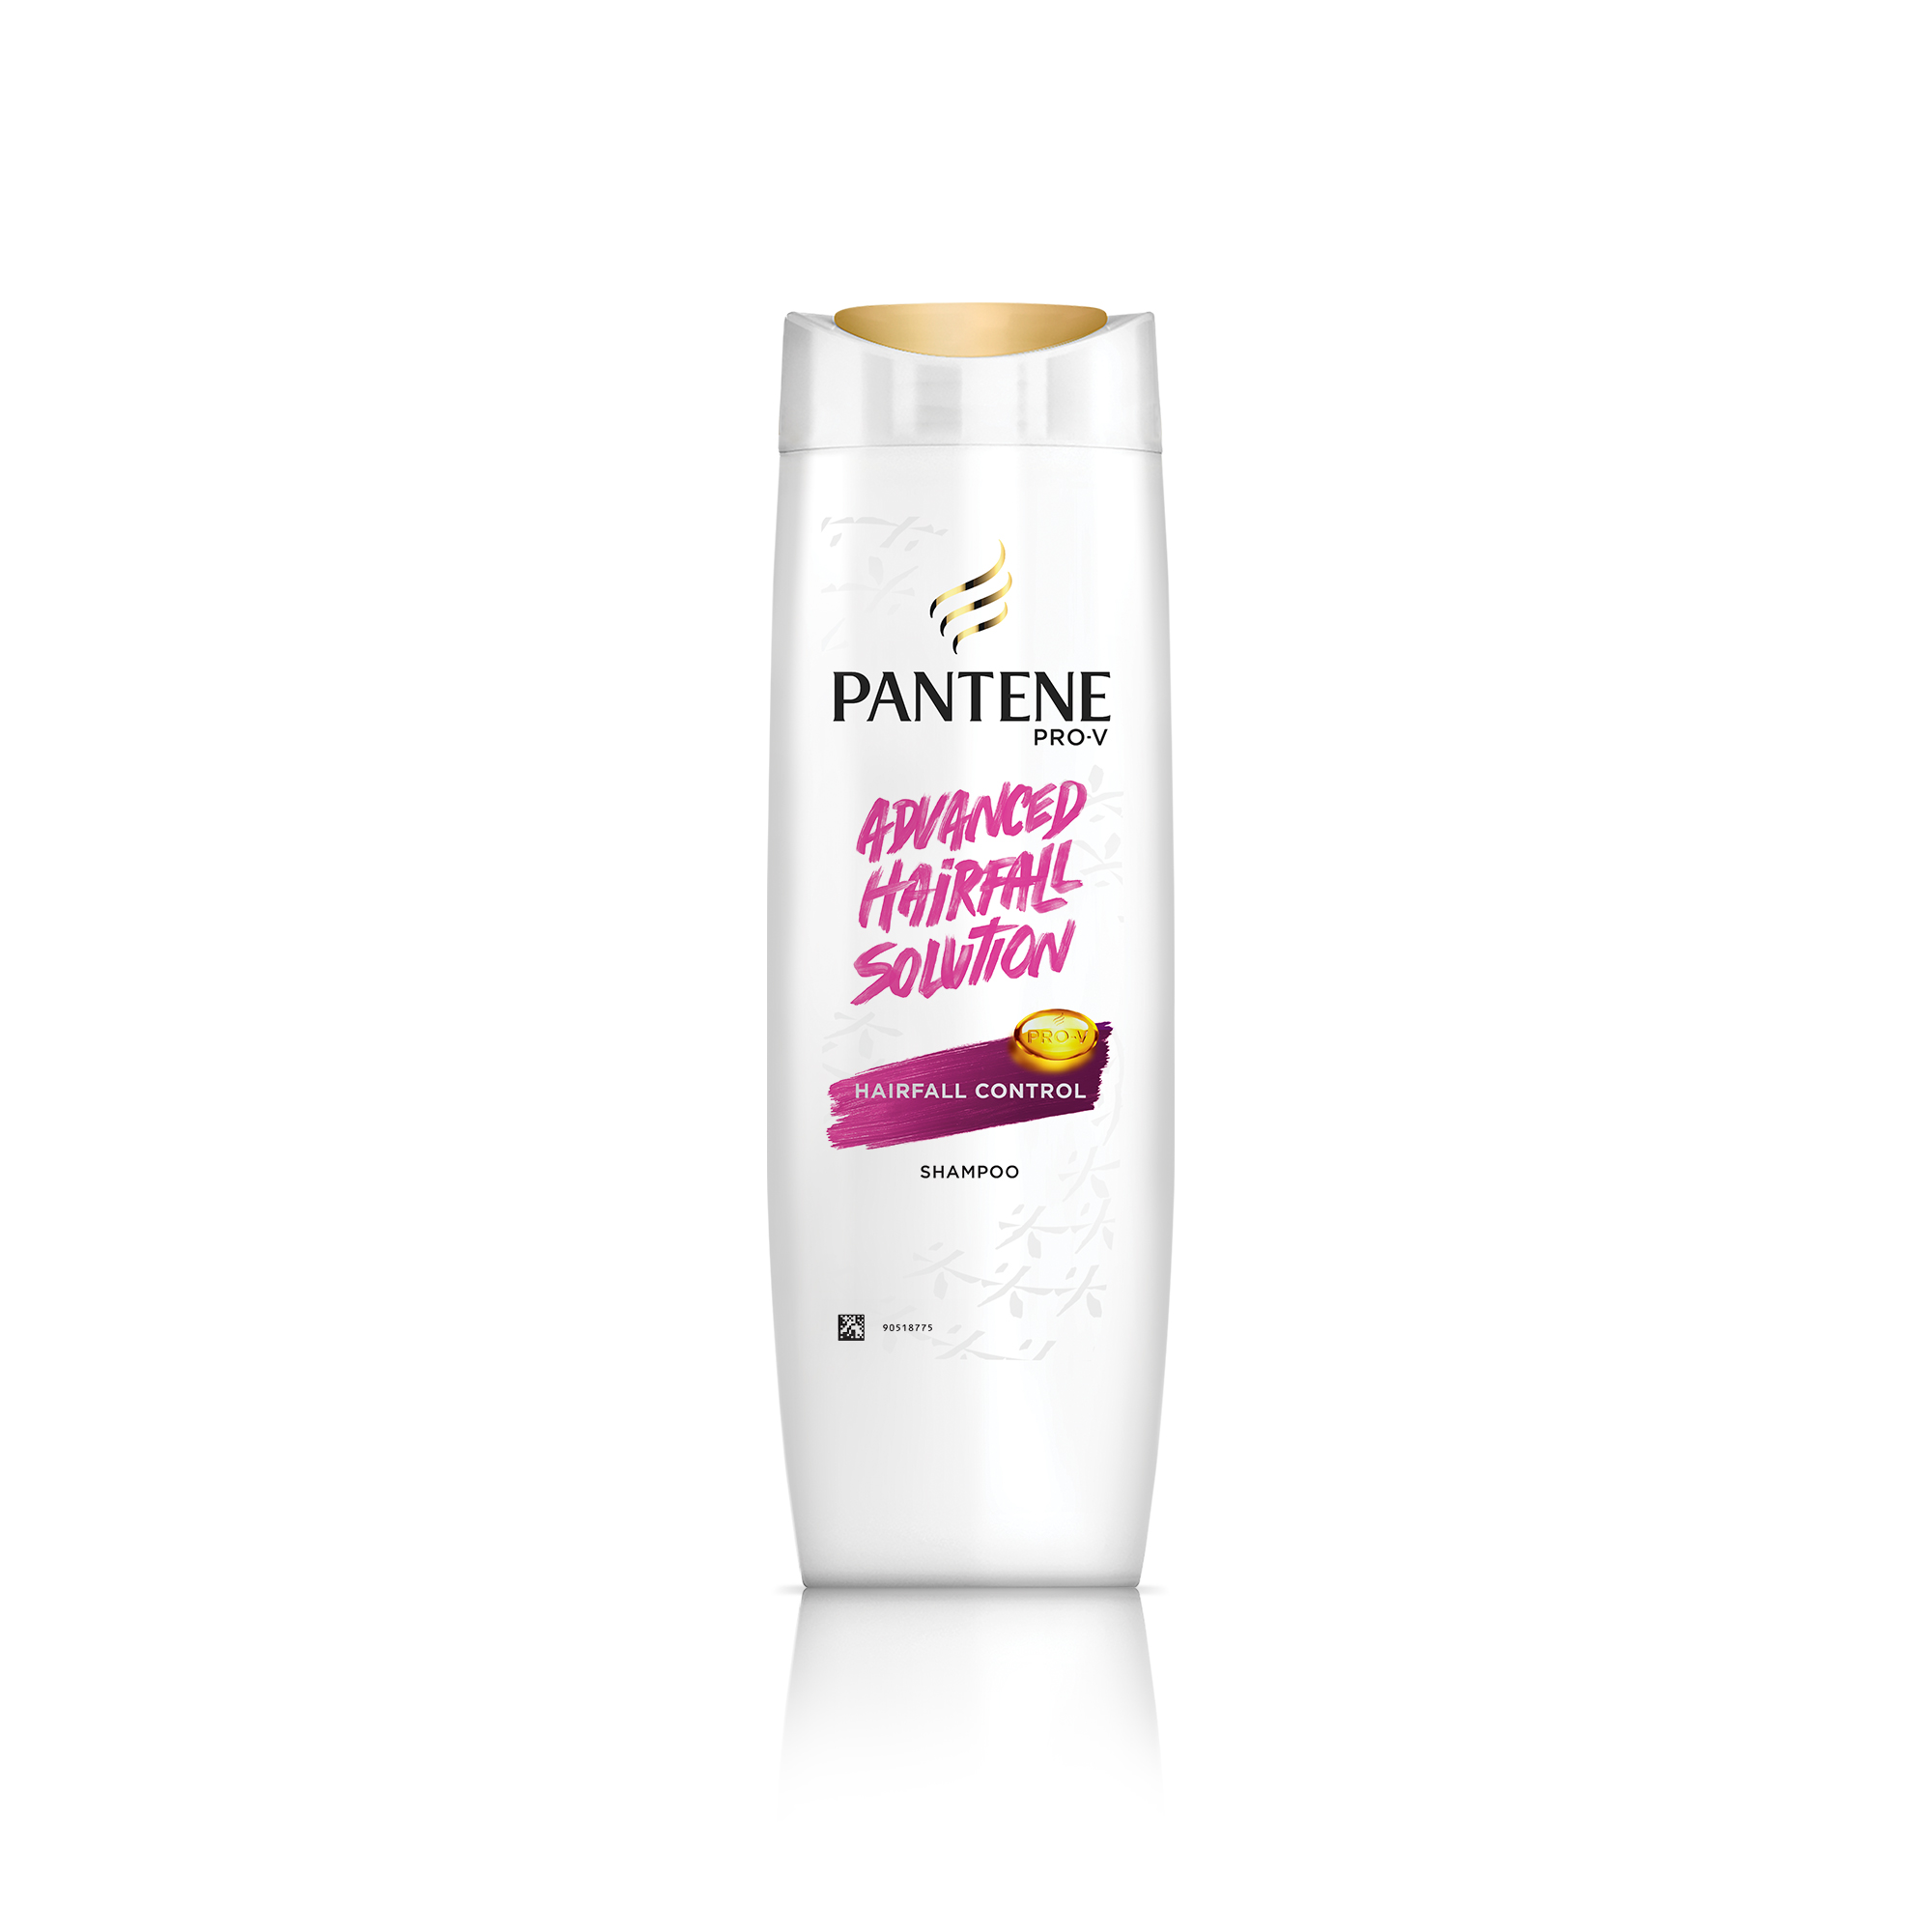 Pantene Advanced Hair Fall Solution Hair Fall Control Shampoo 340 Ml